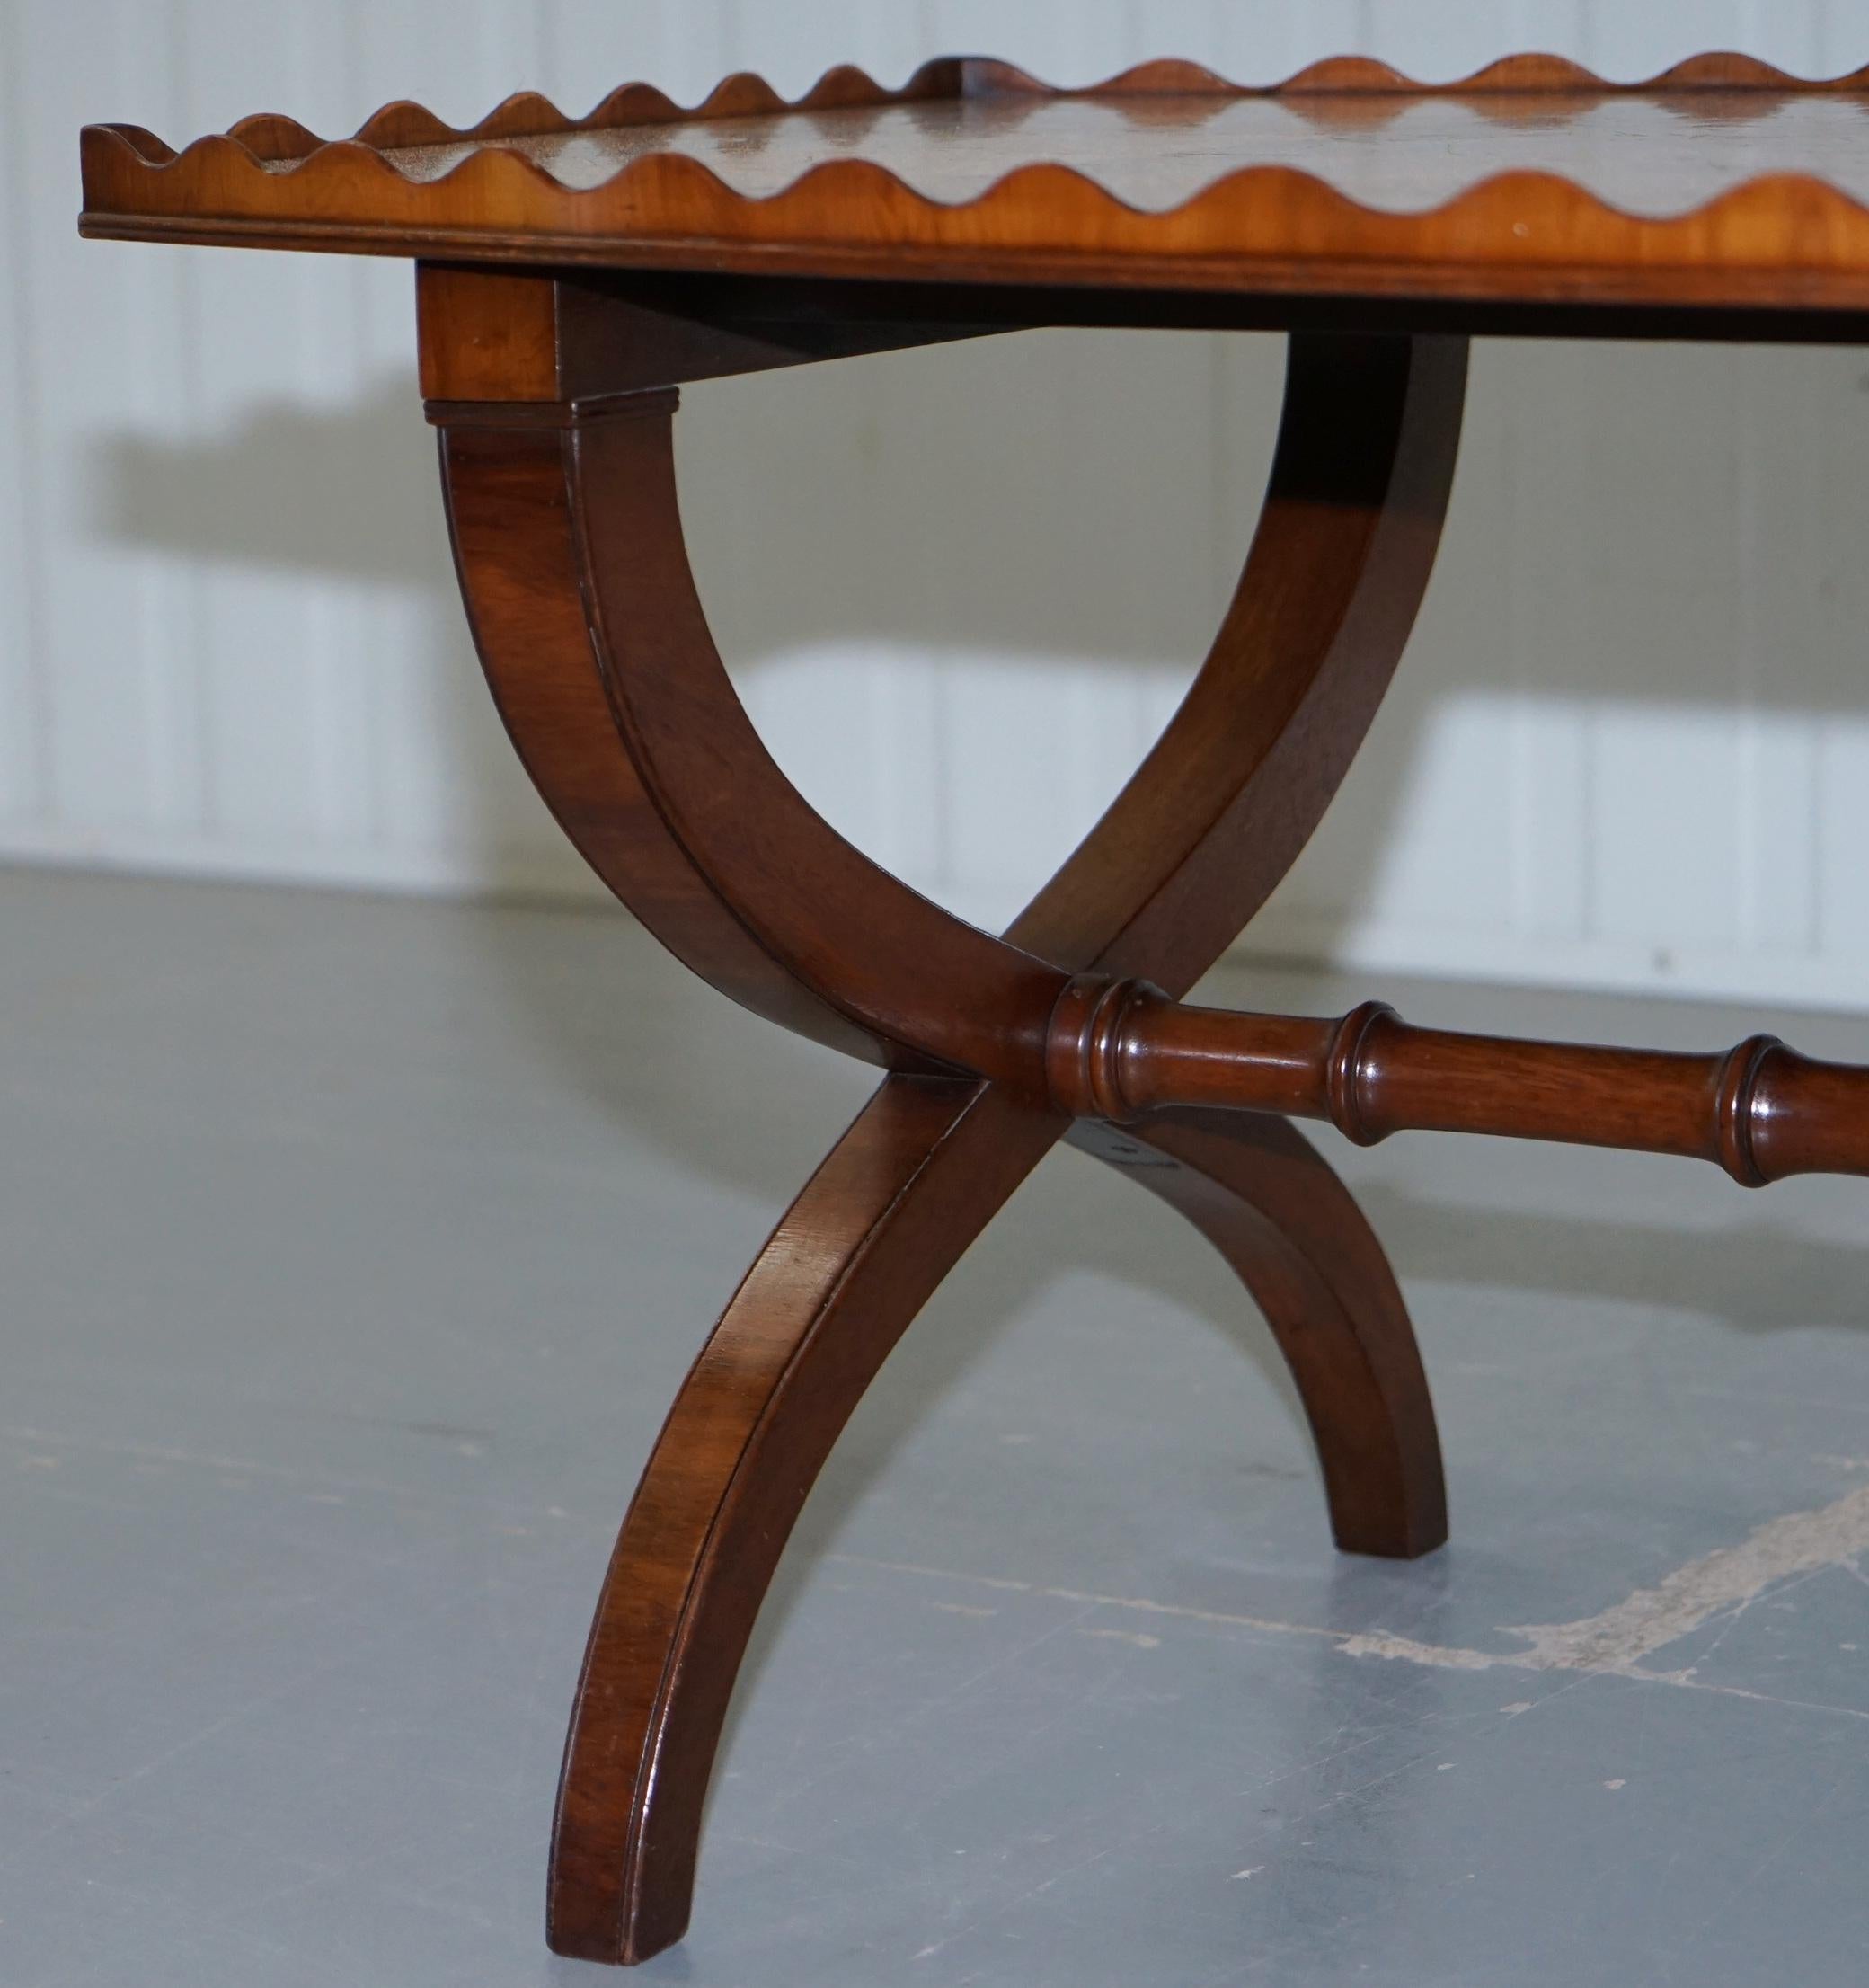 Rare 1930 Oyster Veneered Cross Band Coffee Table Scalloped Edge Walnut Mahogany 2